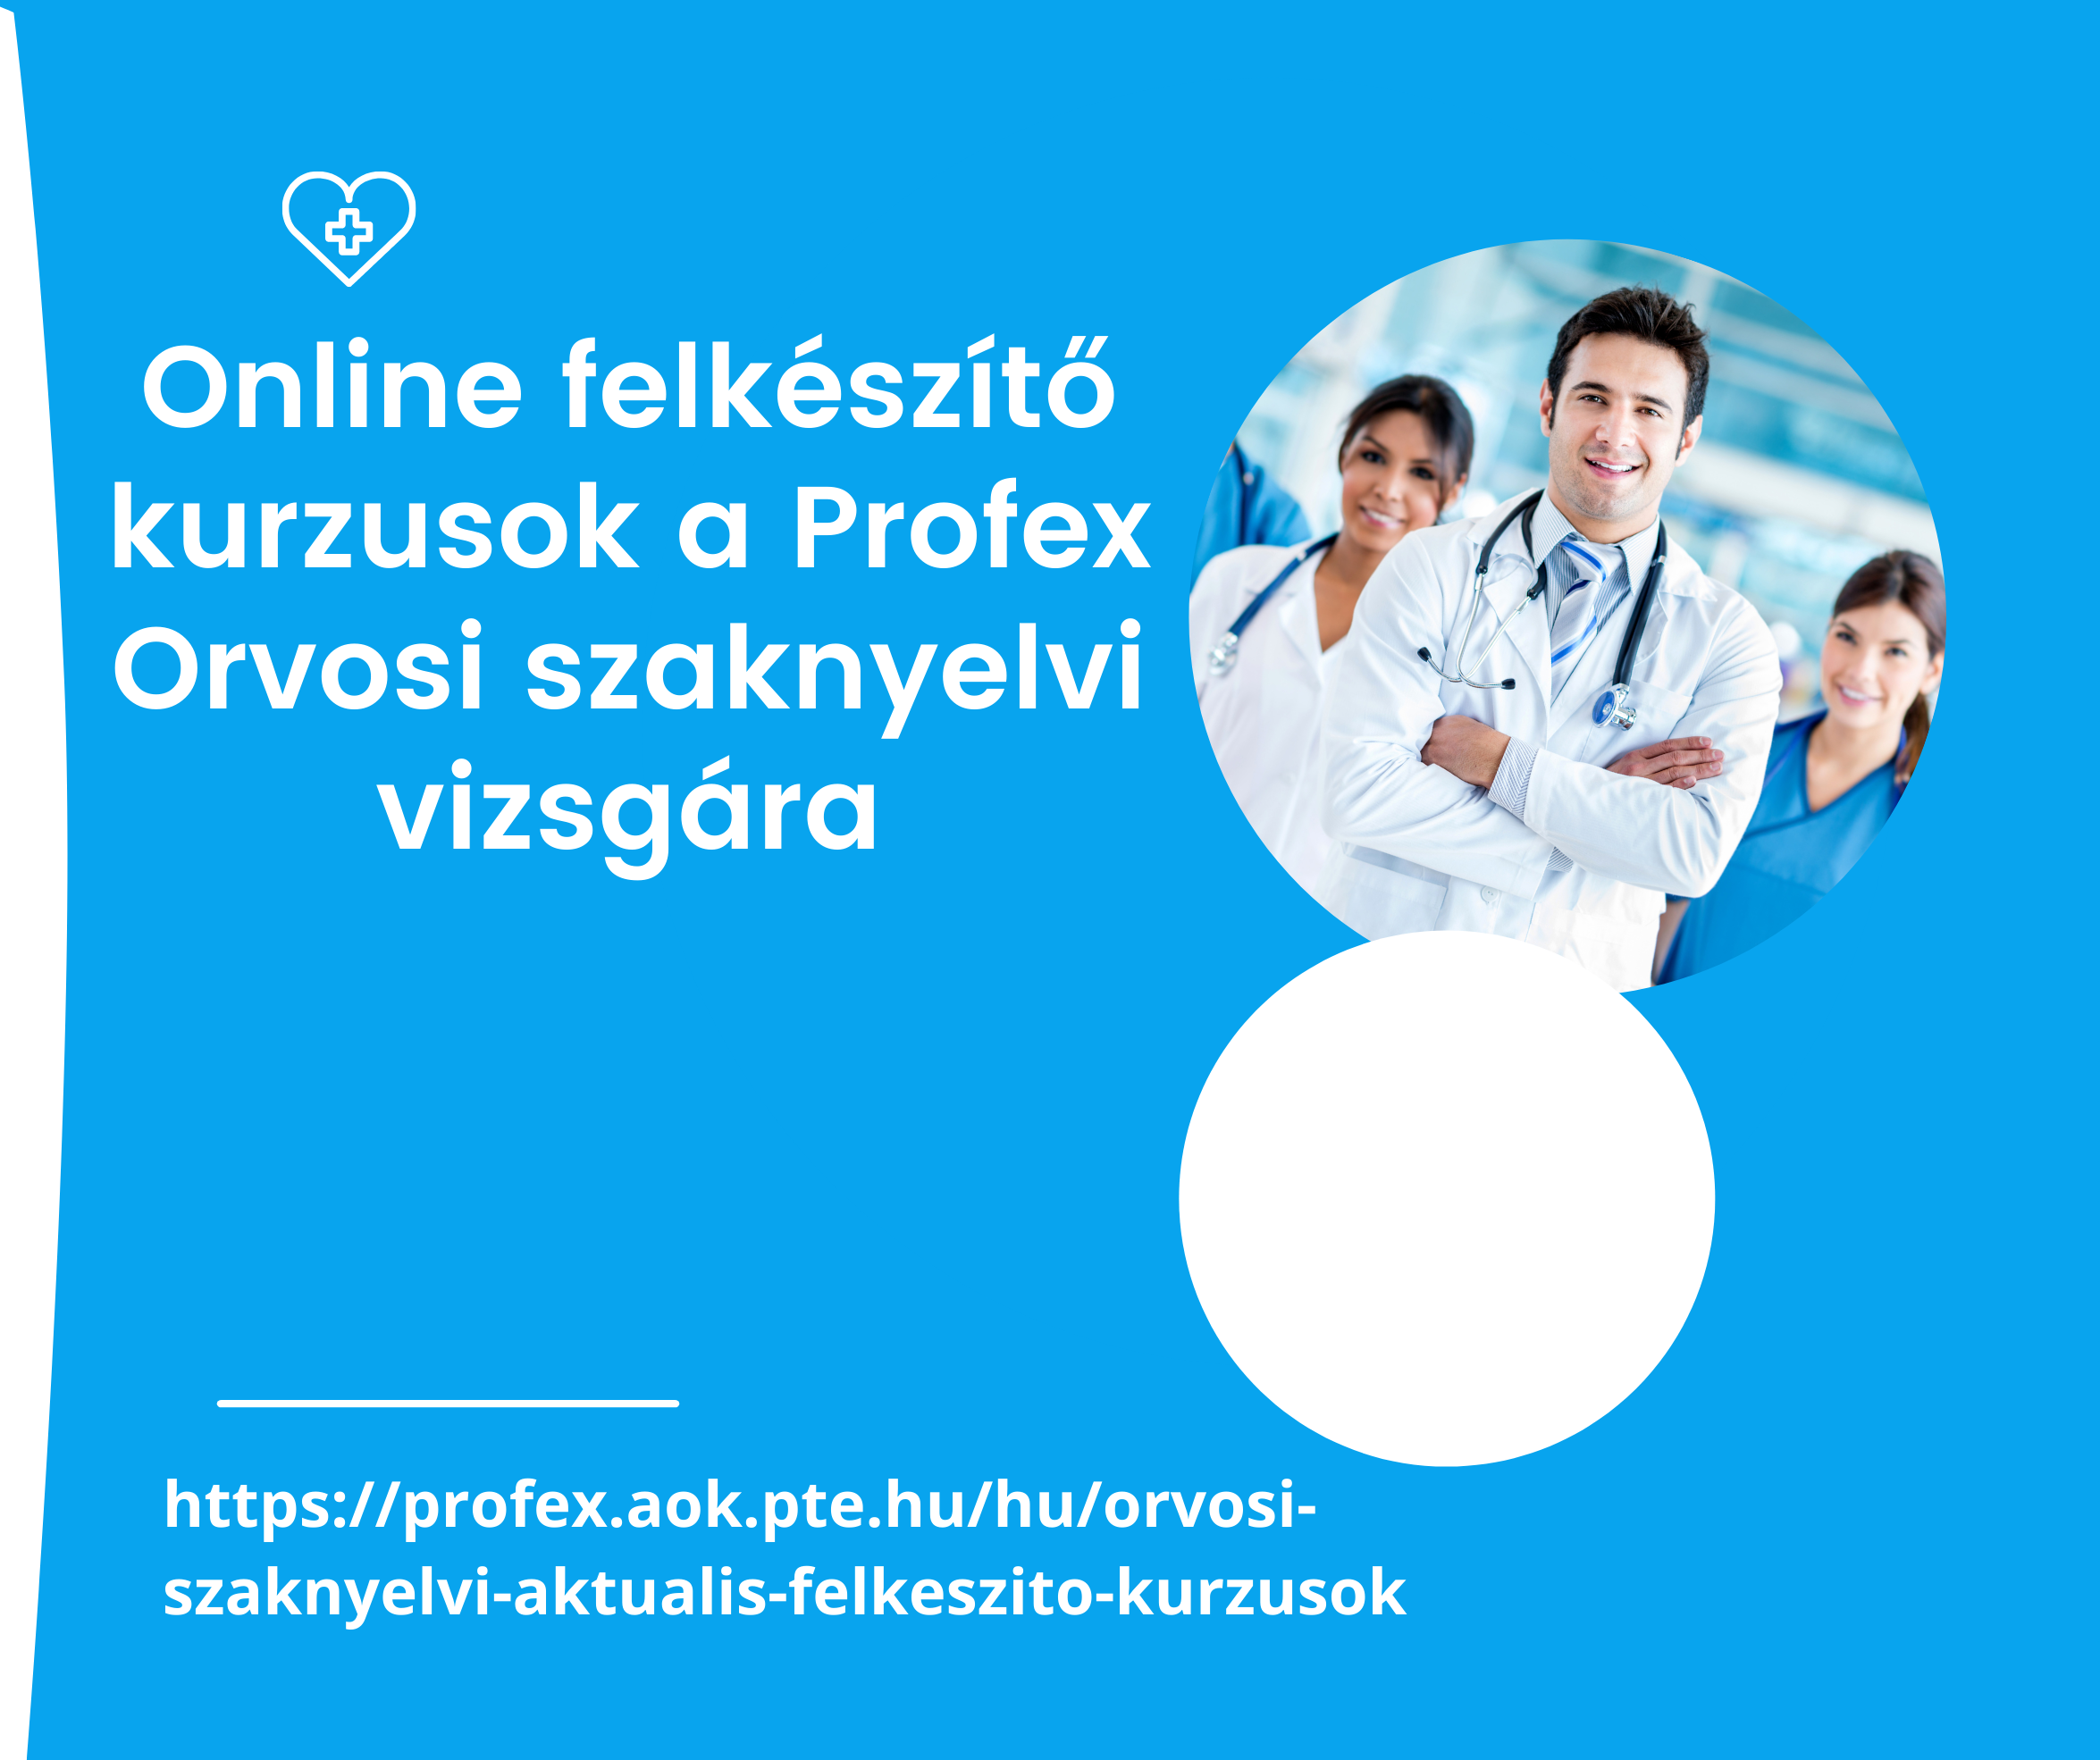 Online-felkeszito-kurzusok-a-Profex-Orvosi-szaknyelvi-vizsgara